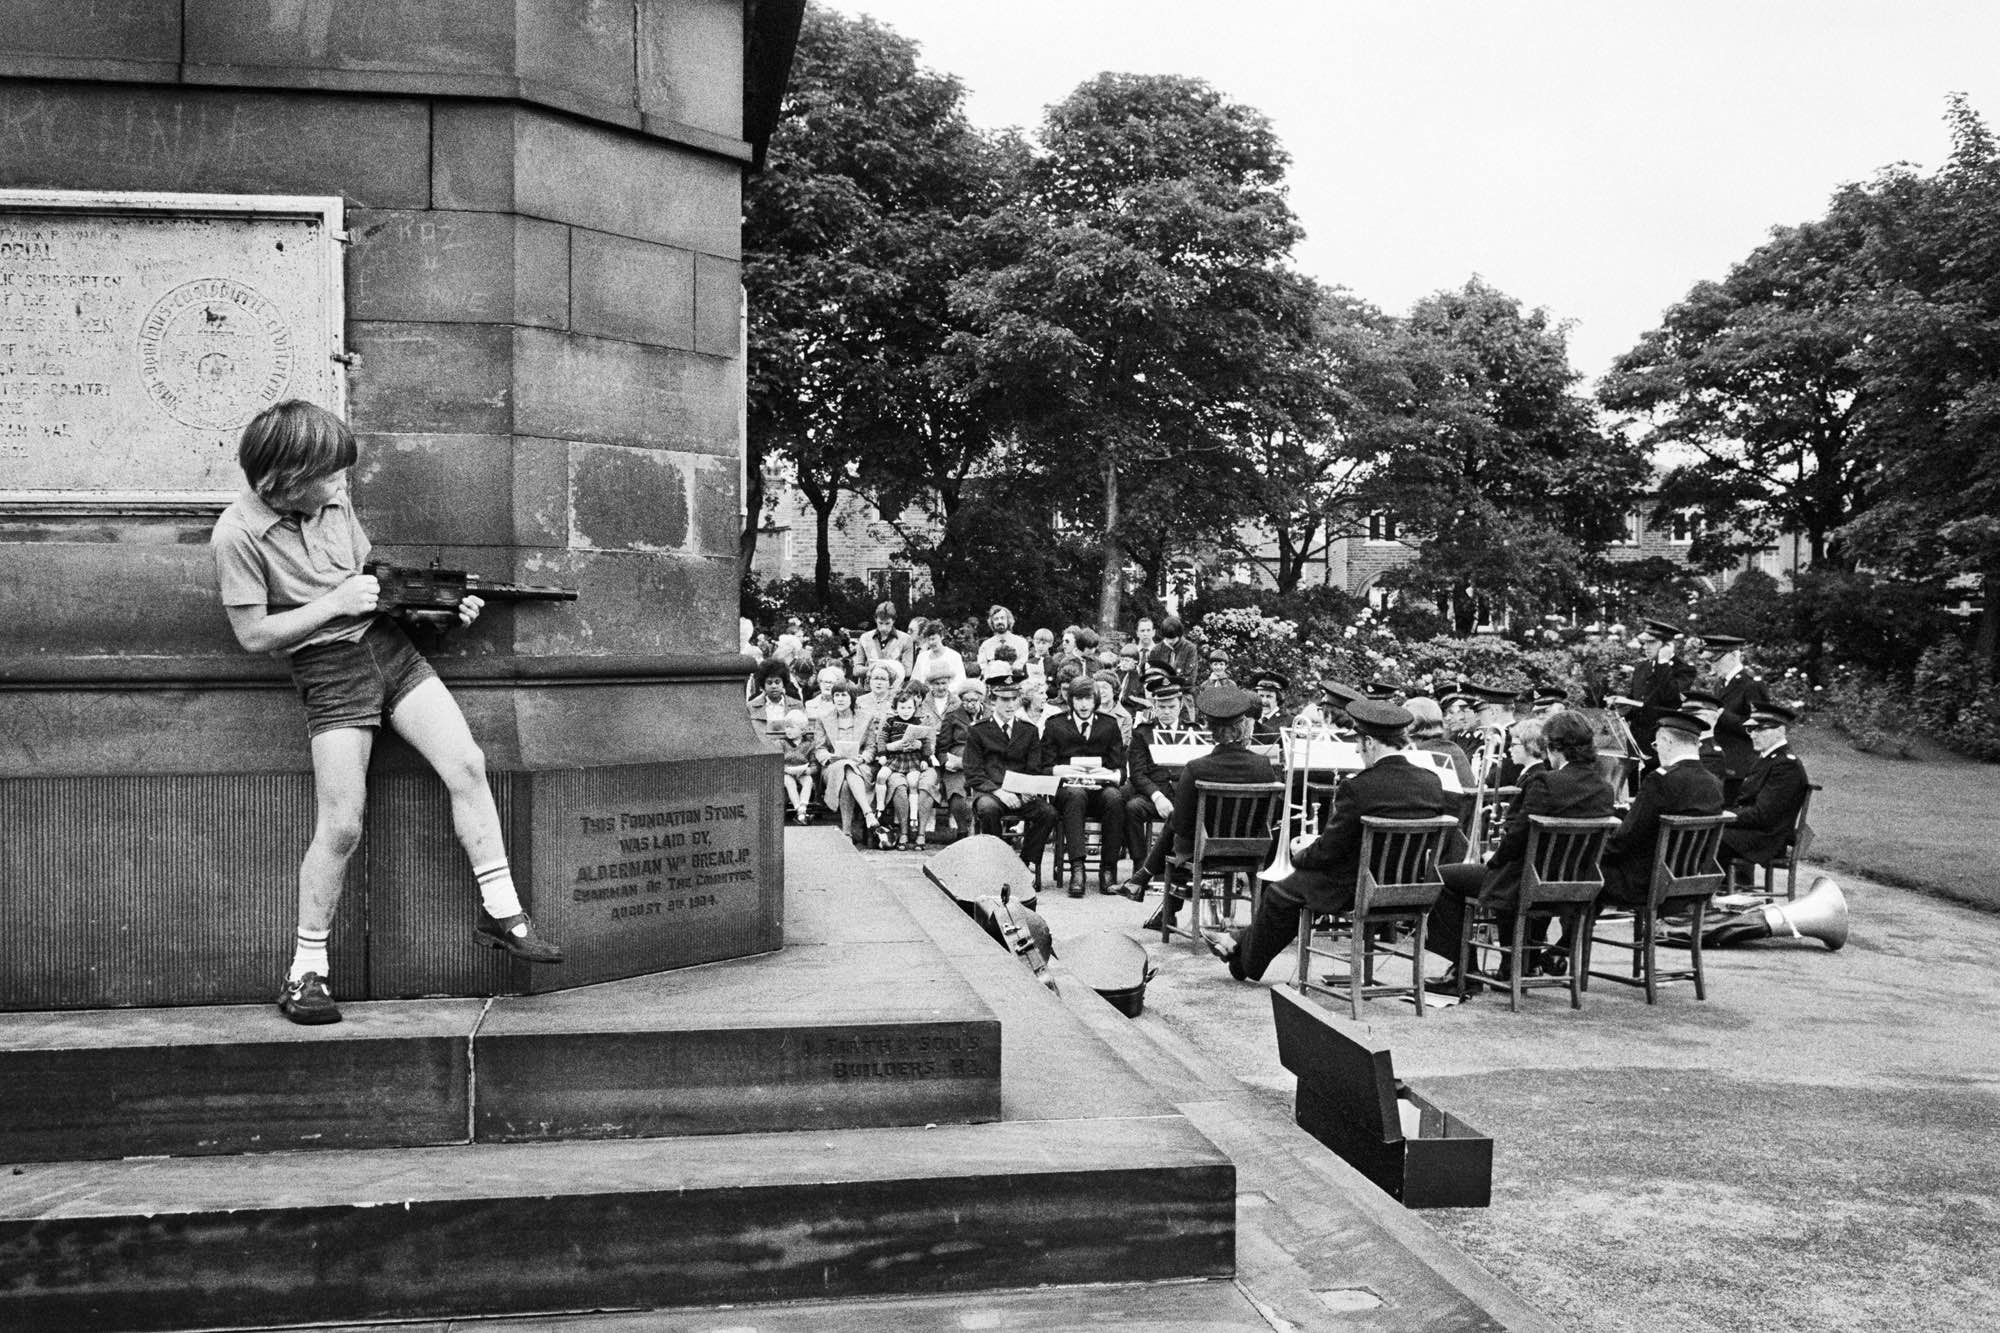 Martin Parr. Tres capillas de la zona se reúnen para celebrar una ceremonia al aire libre, West Vale Park, Halifax, 1975-1980 © Martin Parr / Magnum Photos 